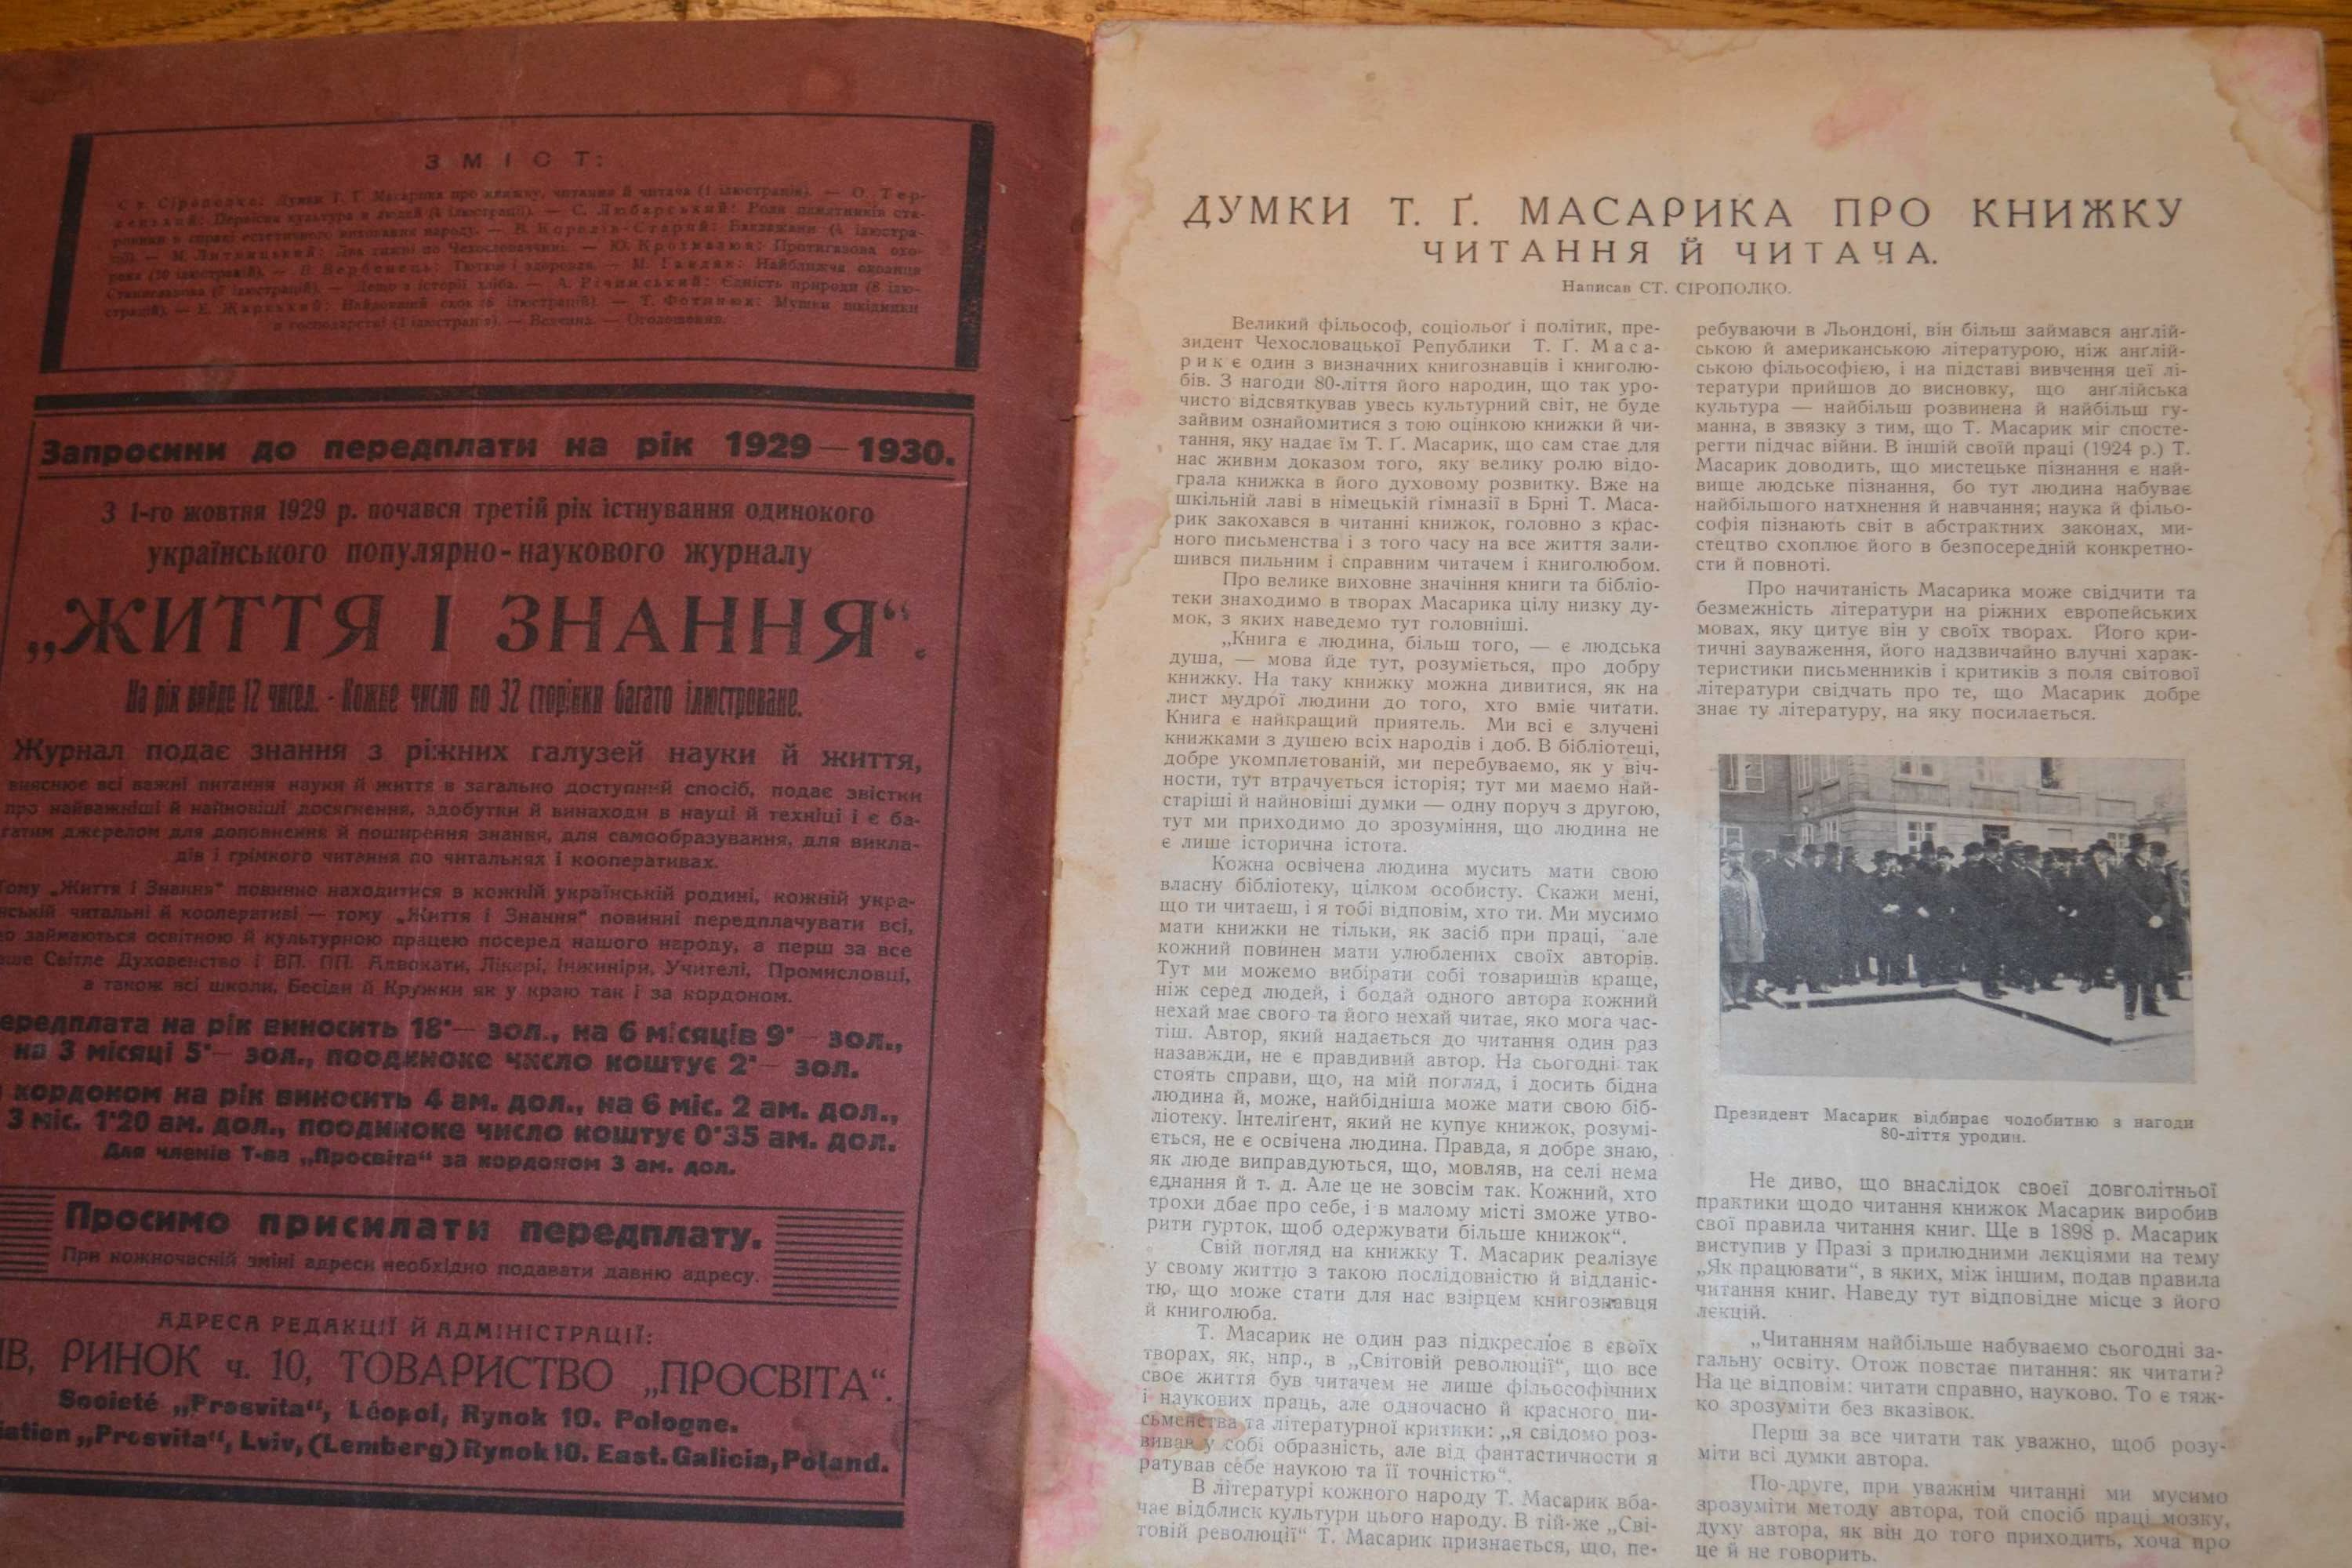 Журнал "Життя і знання" 1930 квітень вид. Львів